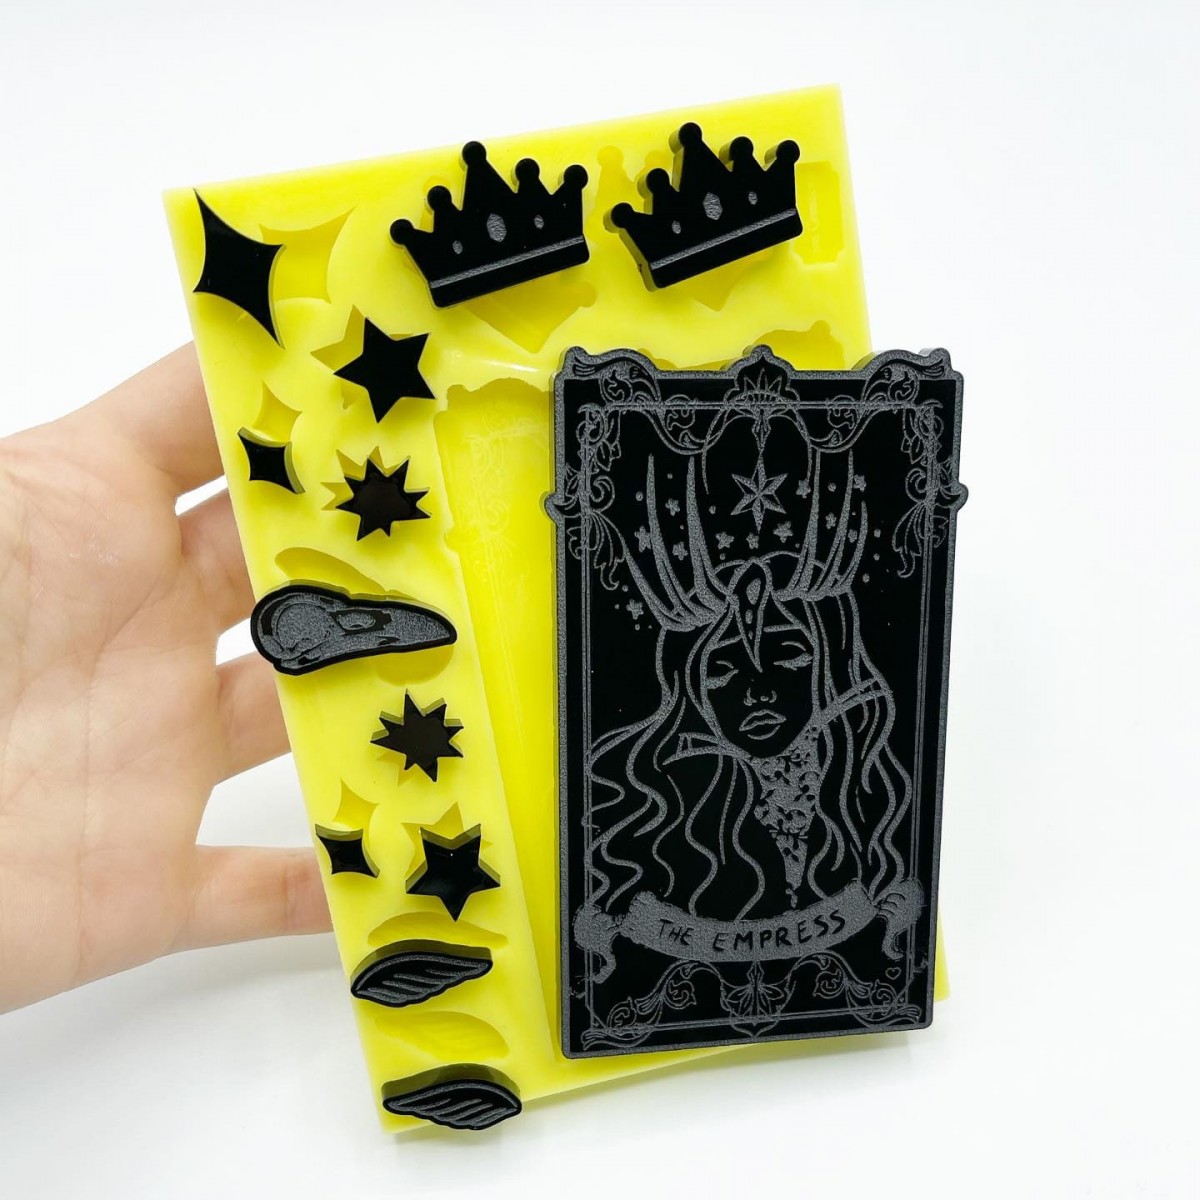 "The Empress" Tarot Card plus 10 shapes